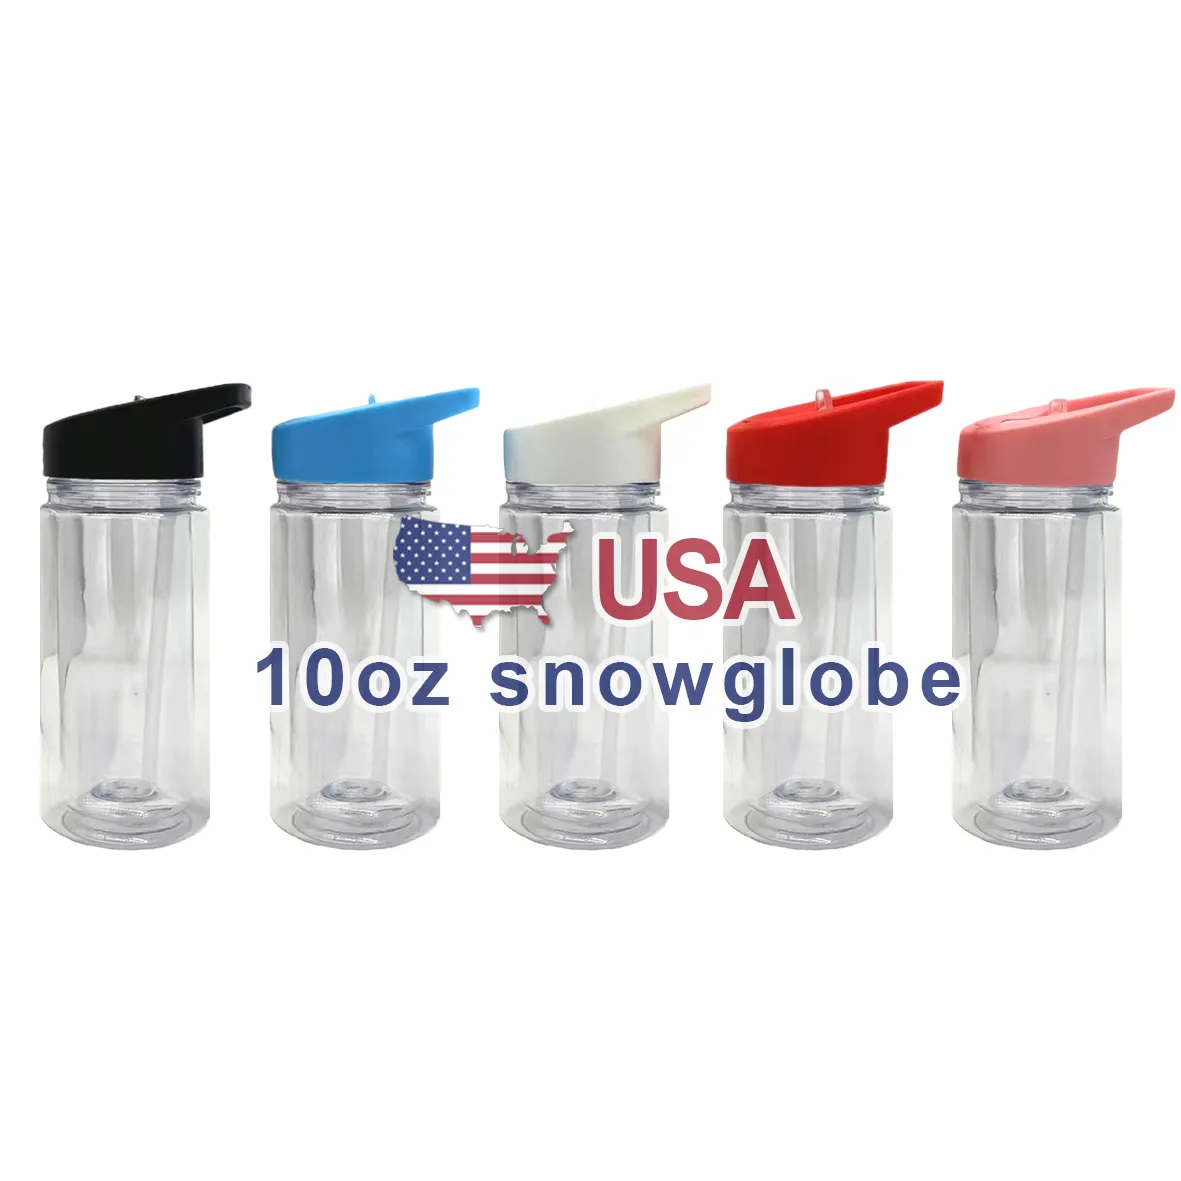 Vasos de plástico de doble pared con globo de nieve de 10oz y 16oz de almacén de EE. UU. Botella de globo de nieve preperforada de acrílico transparente para niños con pajita para sorber